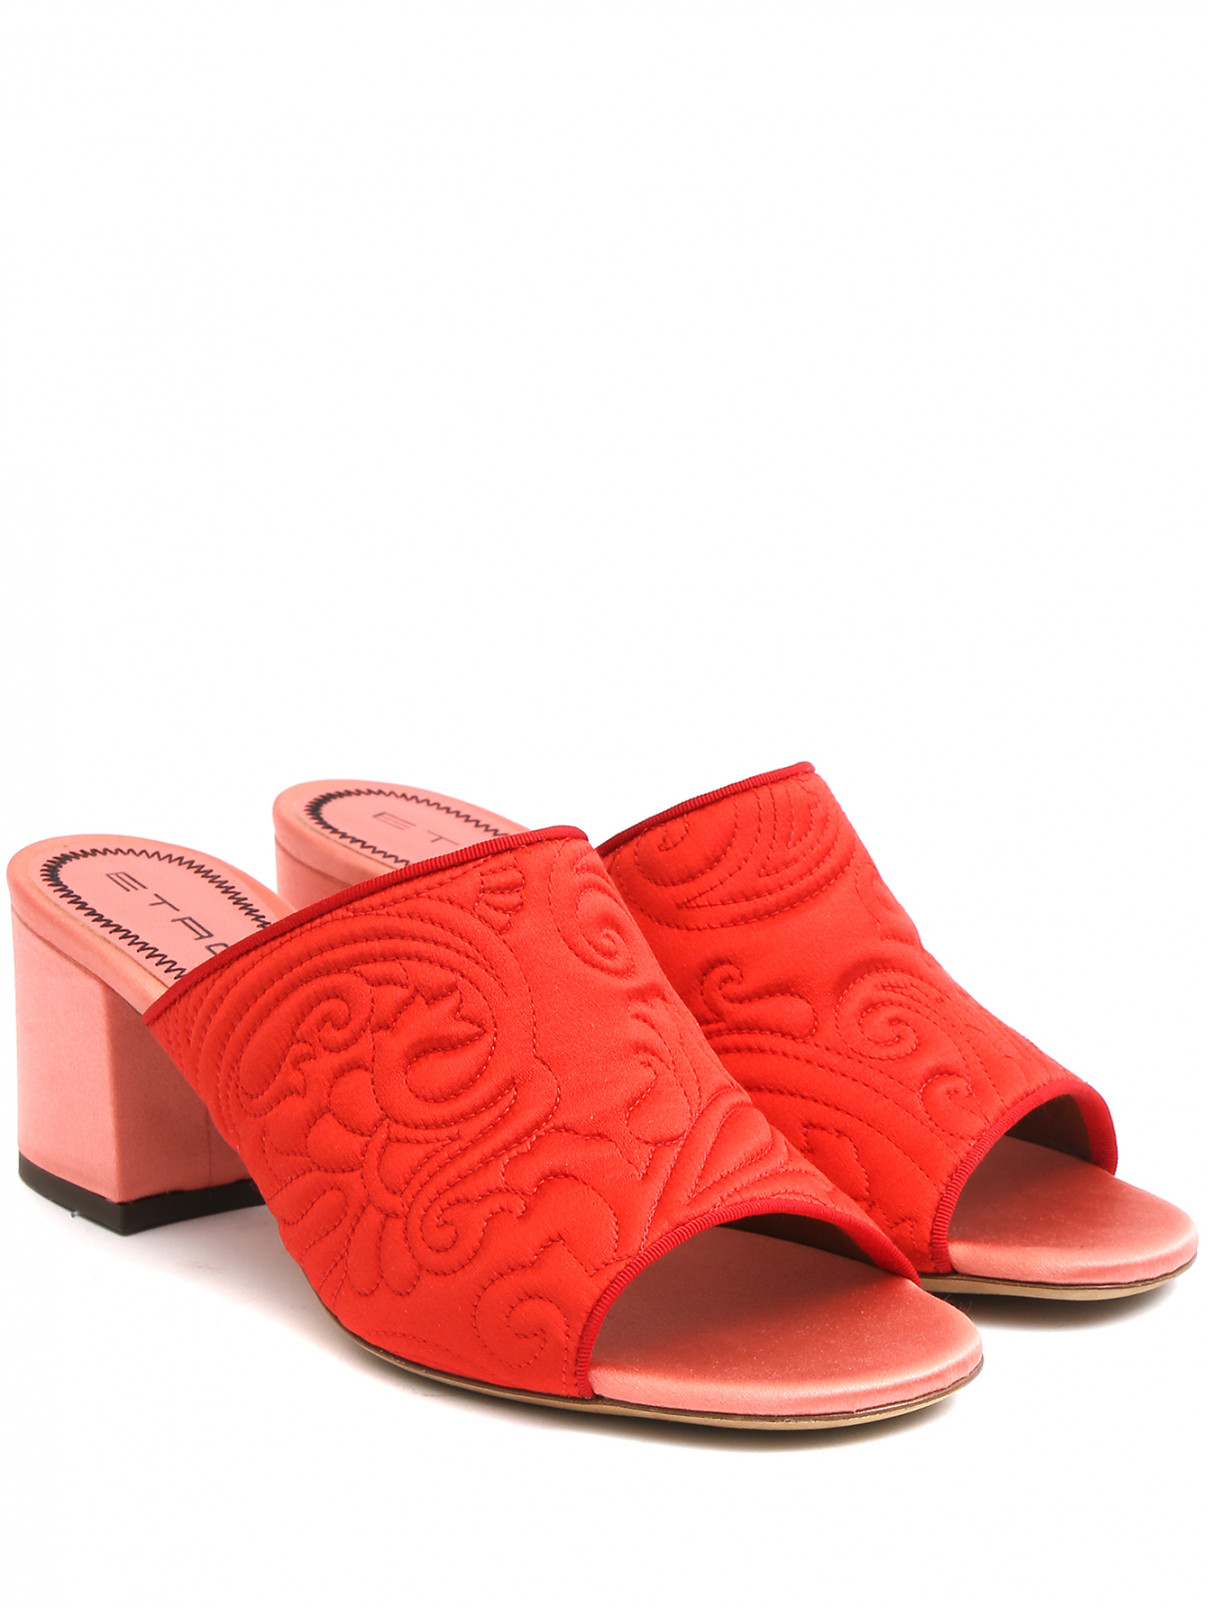 Мюли из текстиля на устойчивом каблуке Etro  –  Общий вид  – Цвет:  Красный